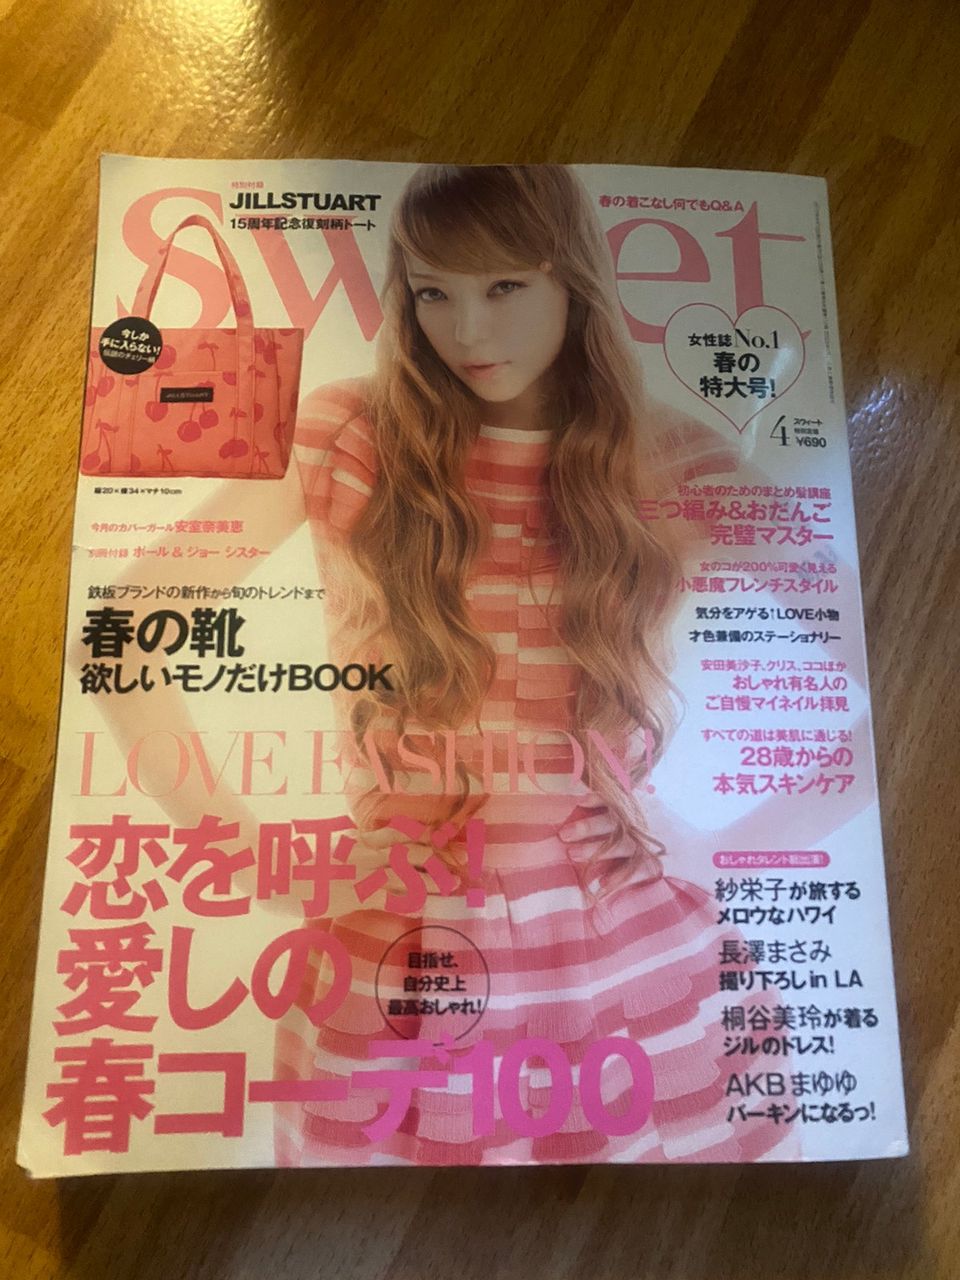 Japanilainen Sweet lehti